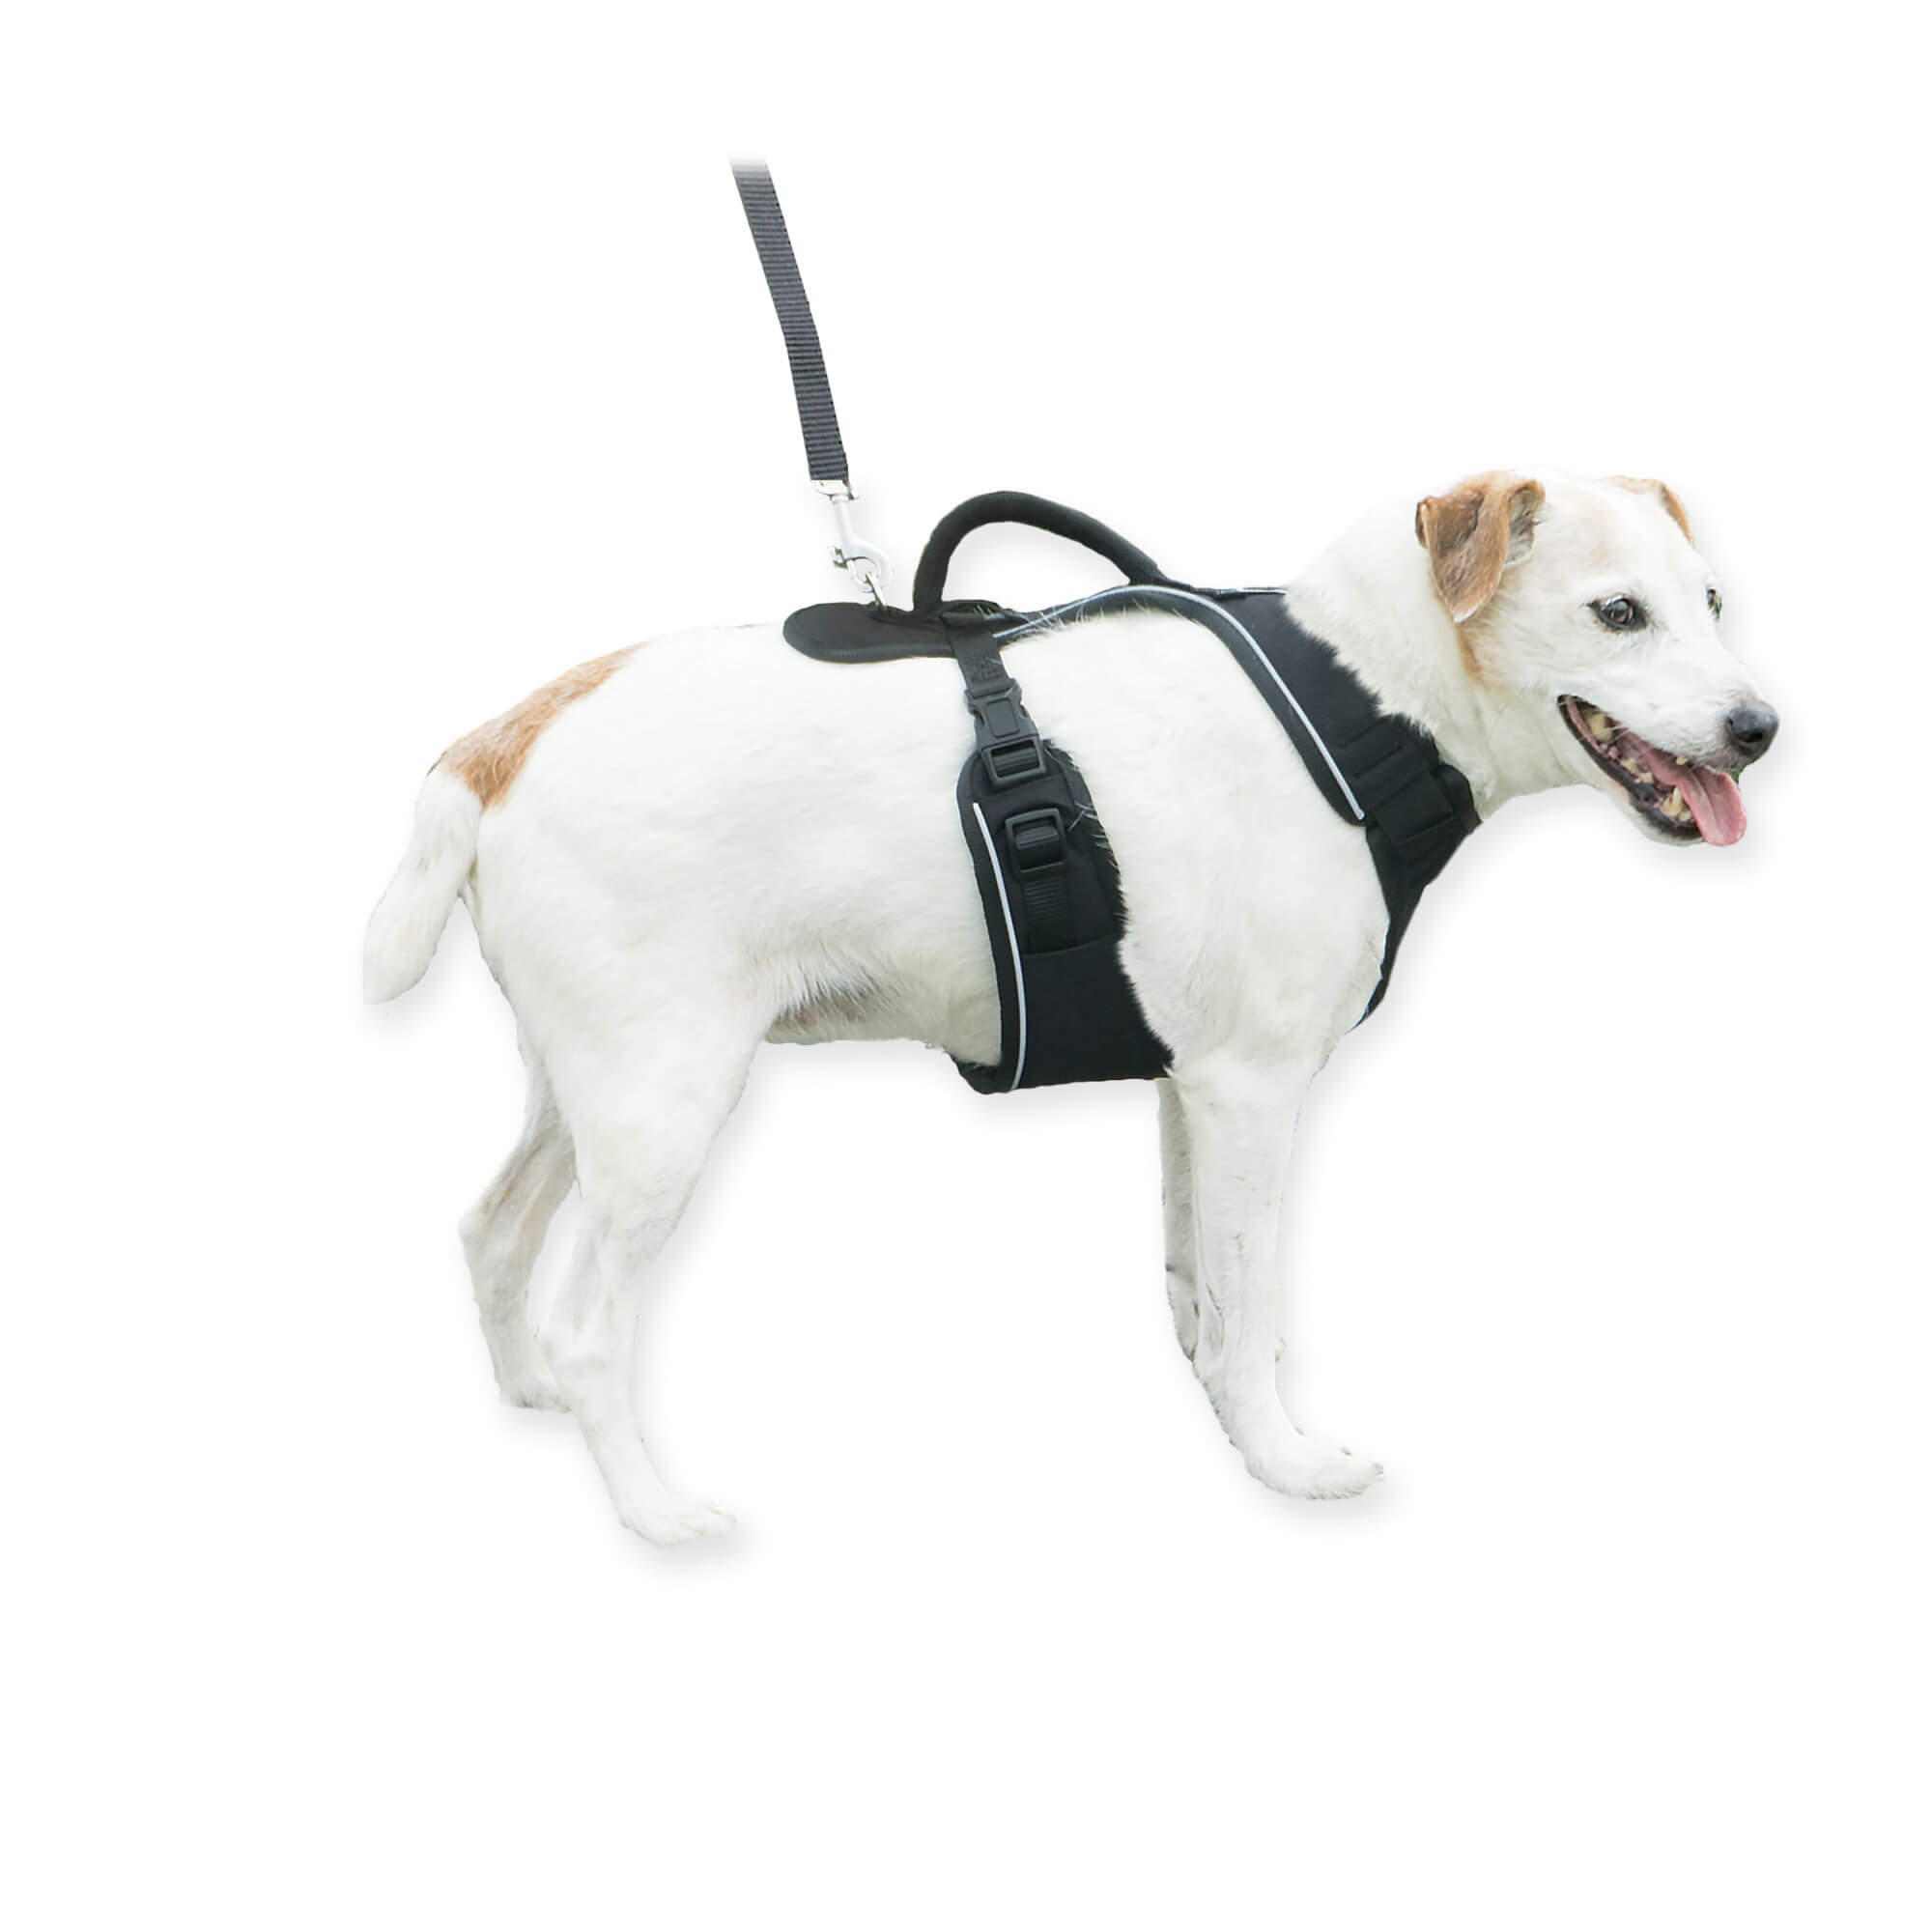 Dog wearing black petsafe easysport harness in small